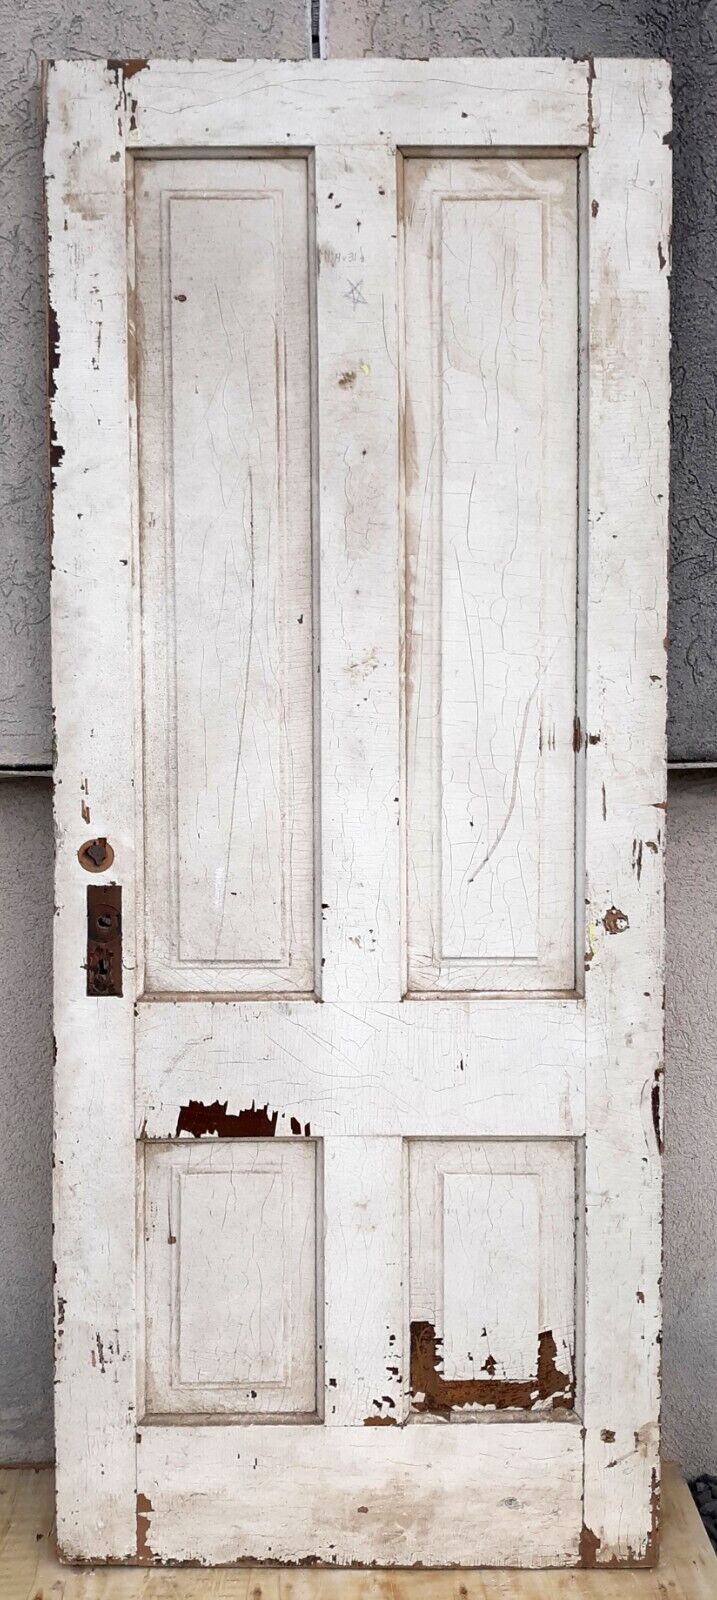 31.5"x79"x1.75" Antique Vintage Victorian Interior SOLID Wood Wooden Door Panels